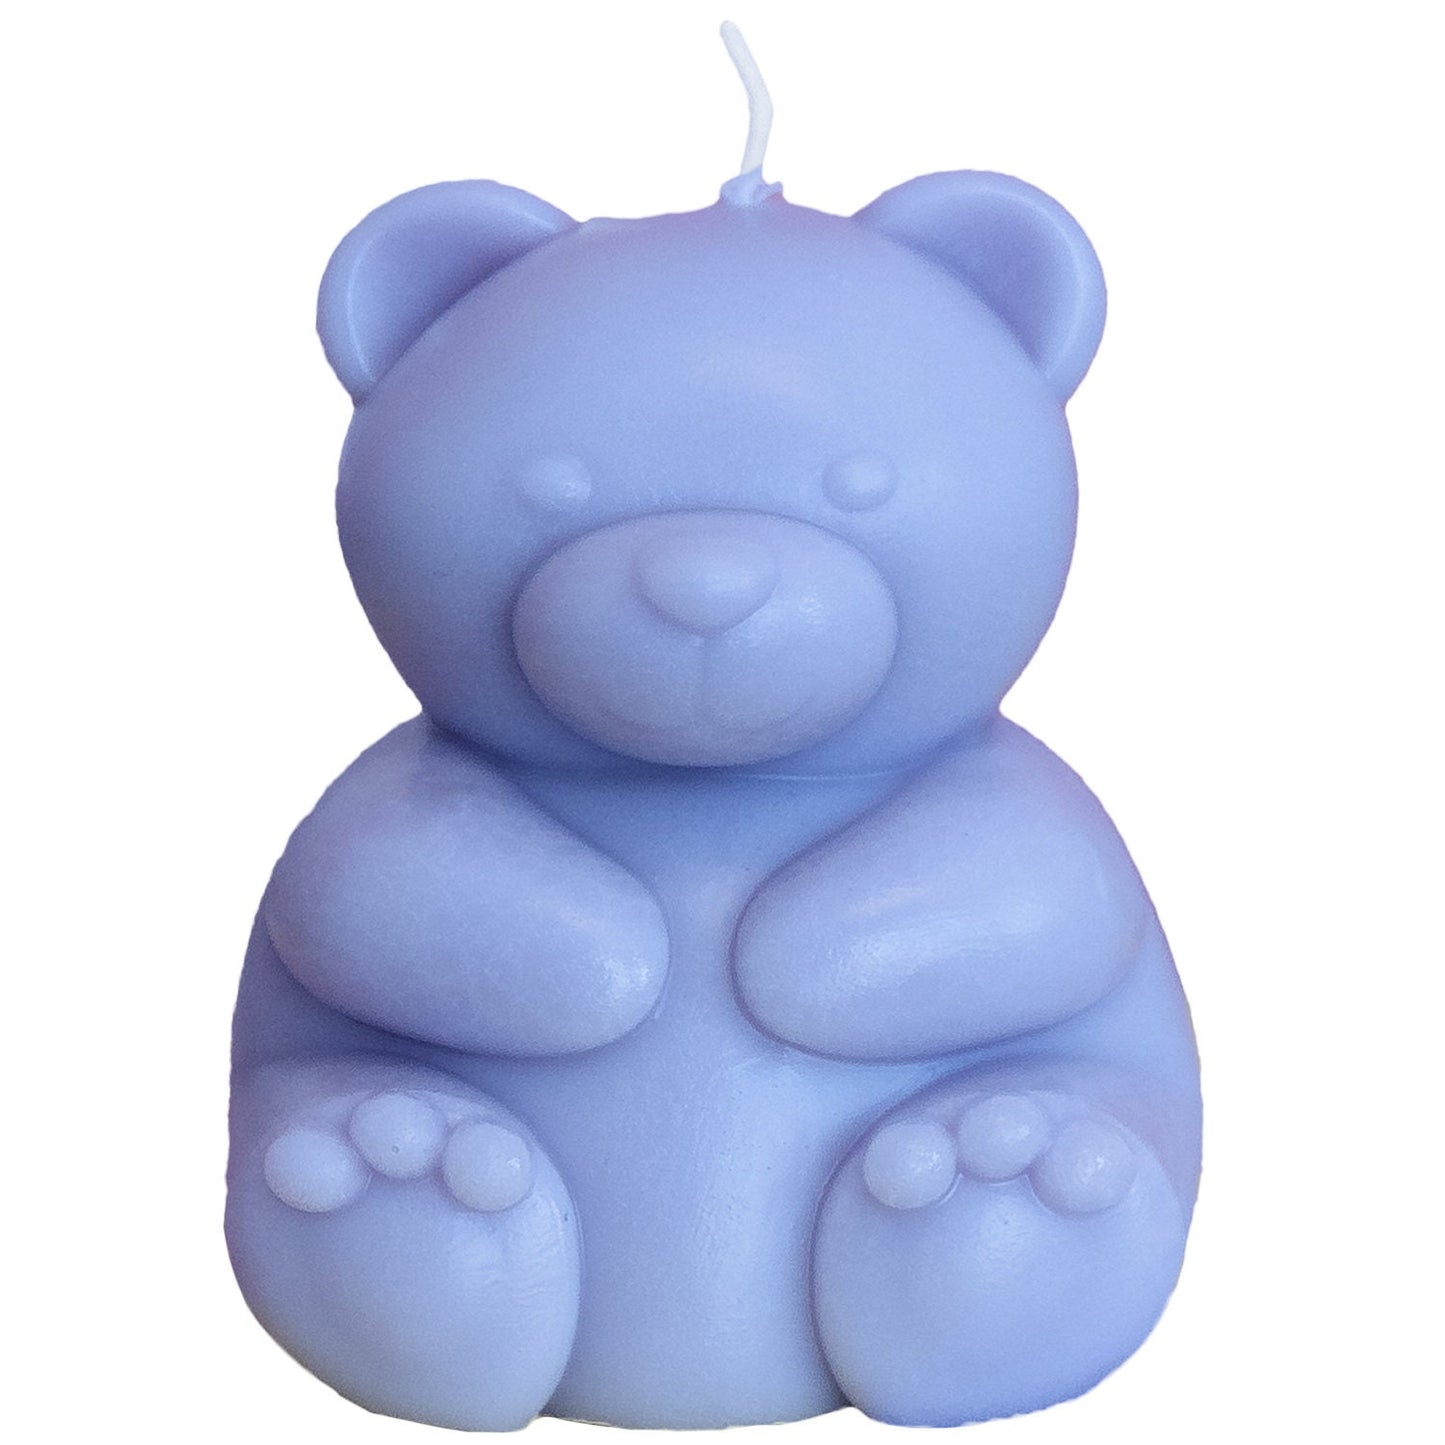 Bear Candle / Teddy Bear / Cute Candle / Custom Soy Wax Candle / Adorable Candle / Custom Made Candles / Cute Home Decor Candles